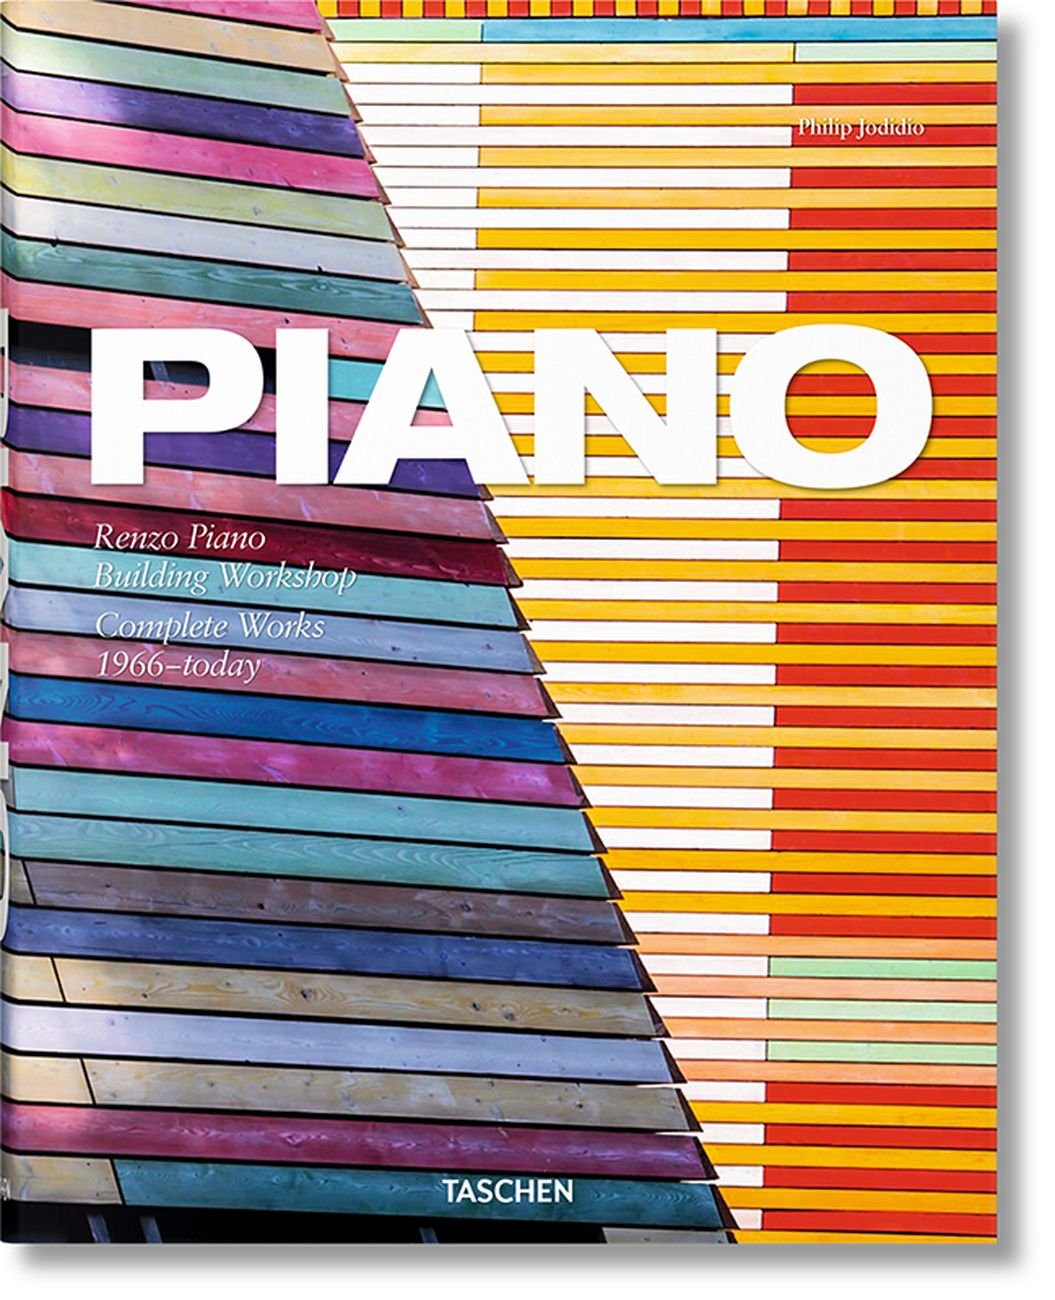 Philip Jodidio – Piano. Complete Works 1966–today (Taschen, Colonia 2018)